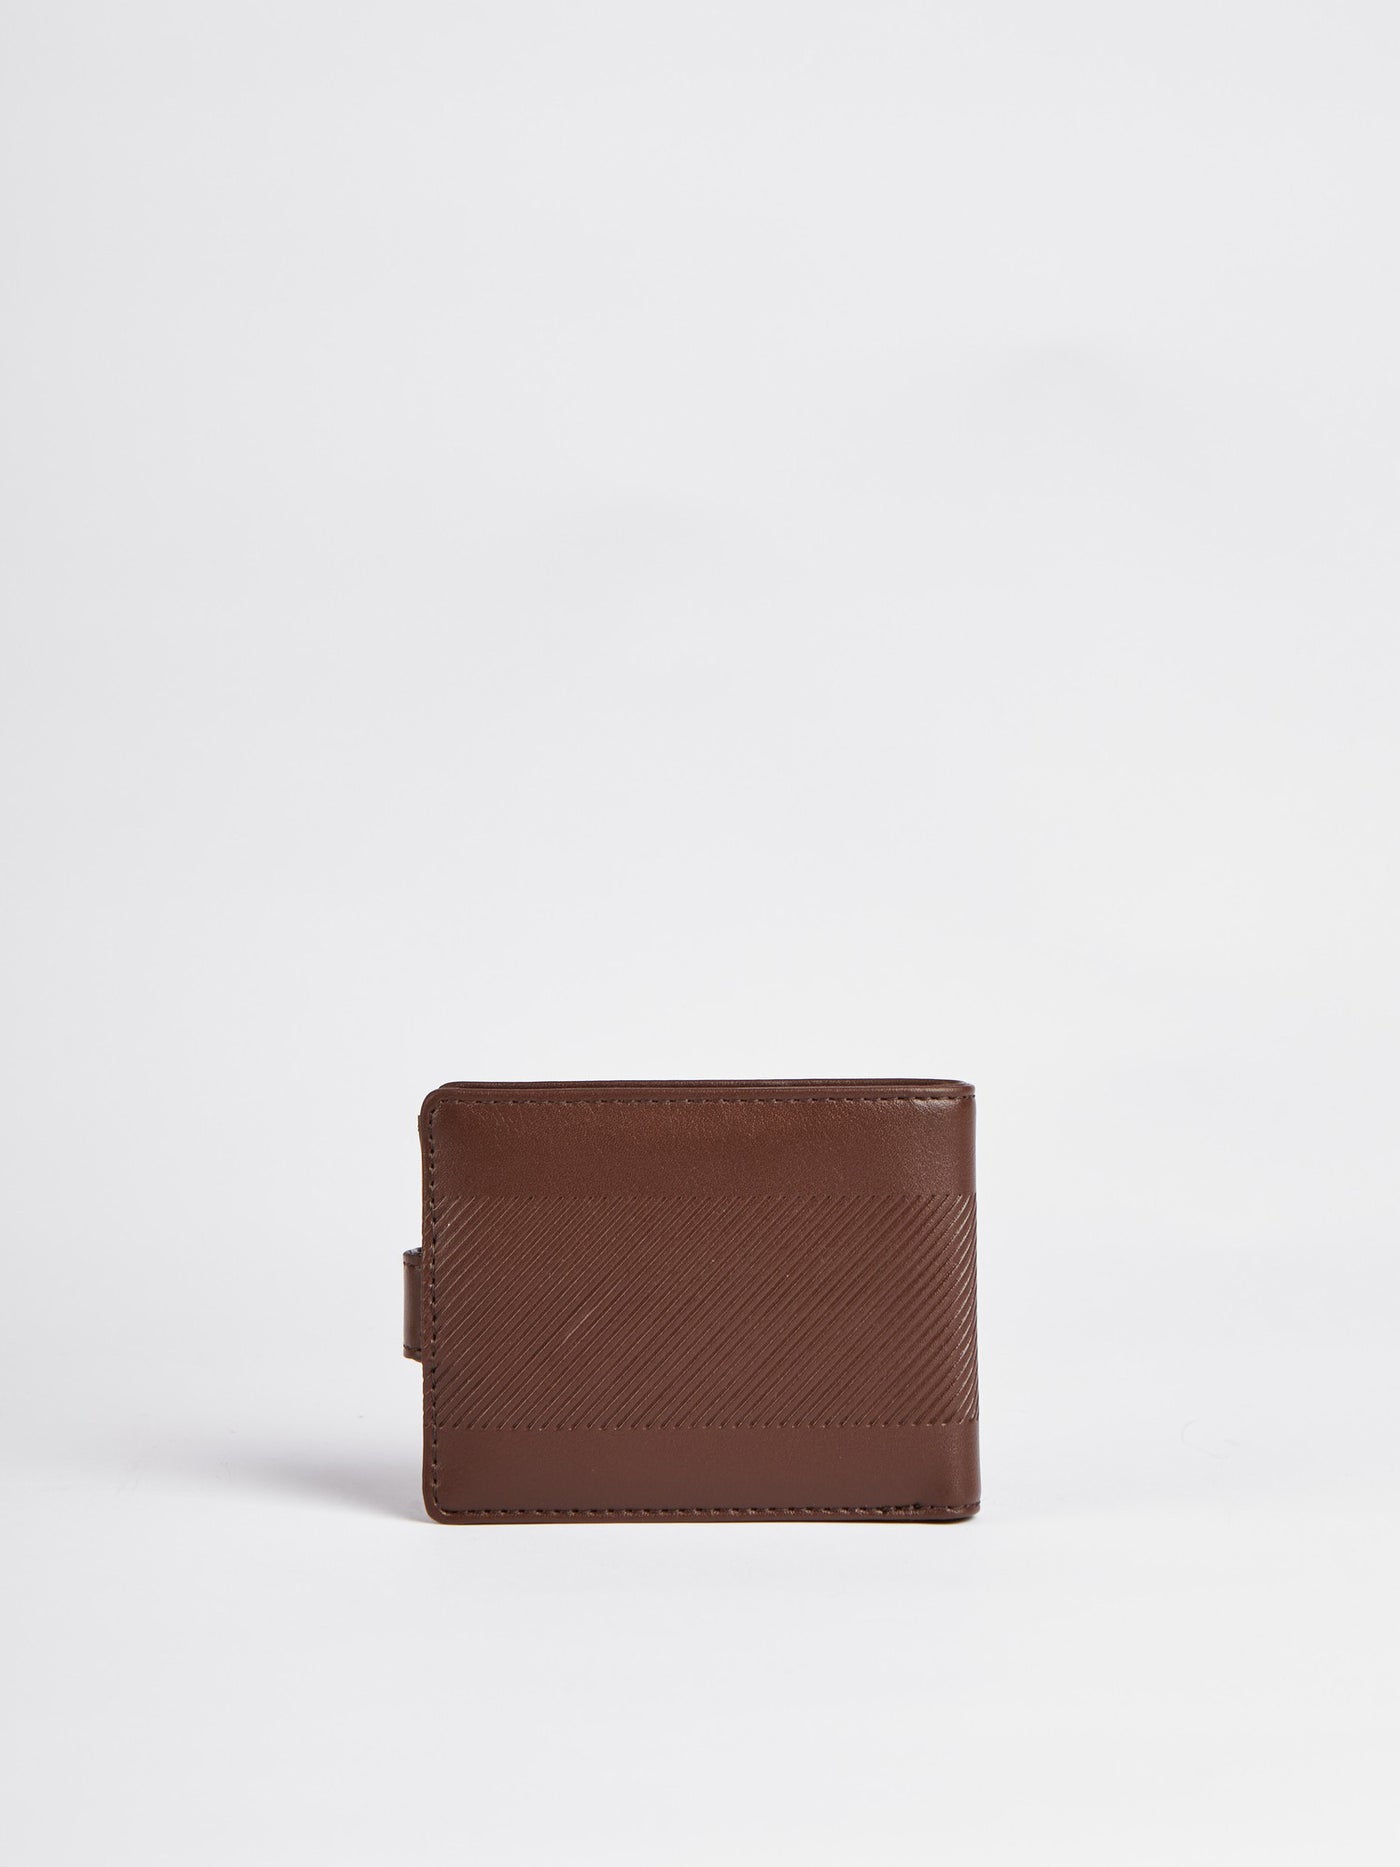 Wallet - Textured